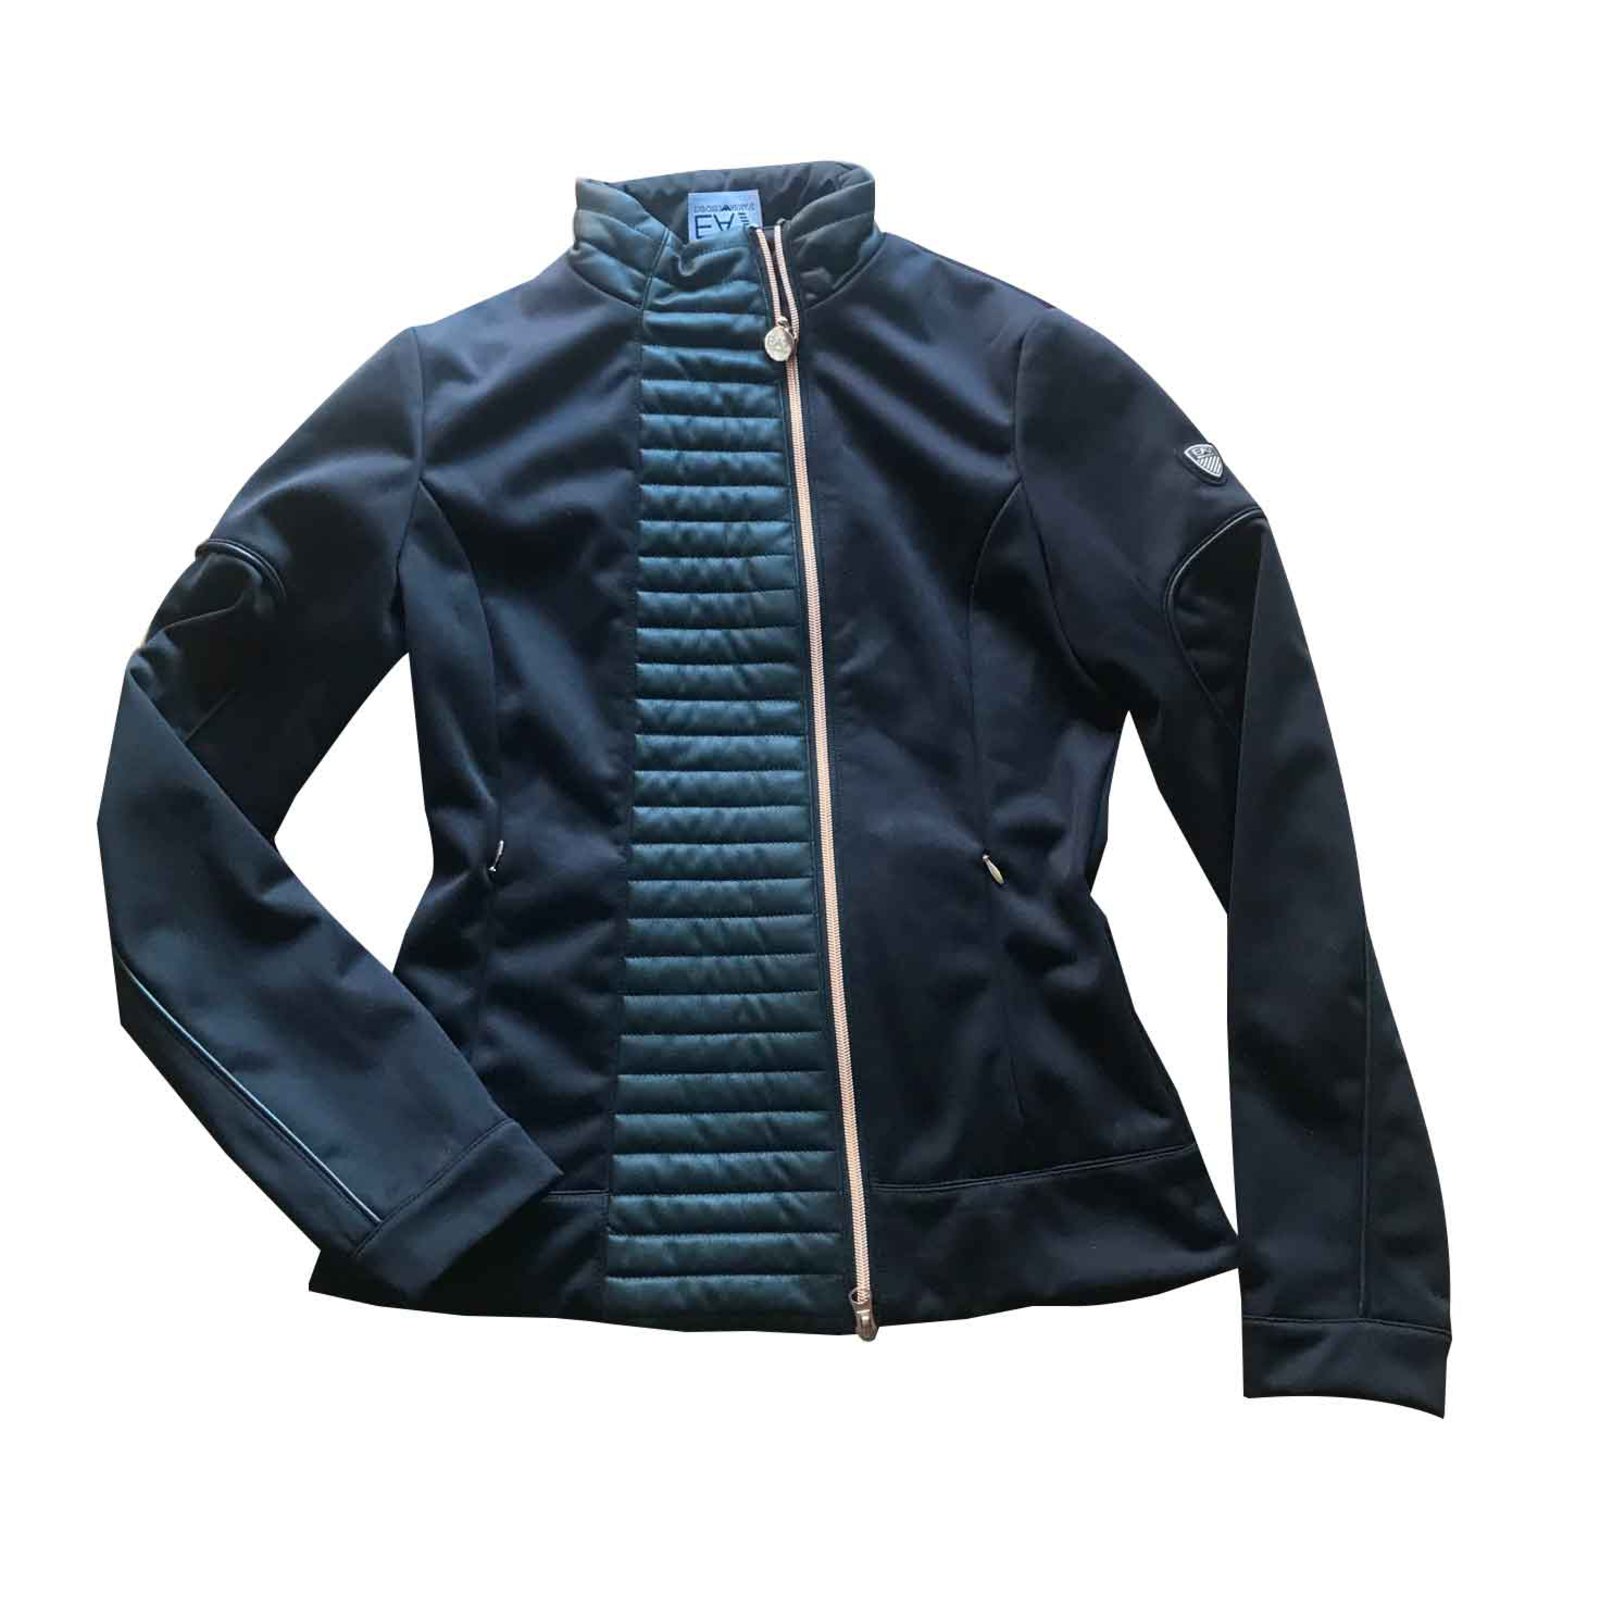 Emporio Armani Woman's jacket Jackets 